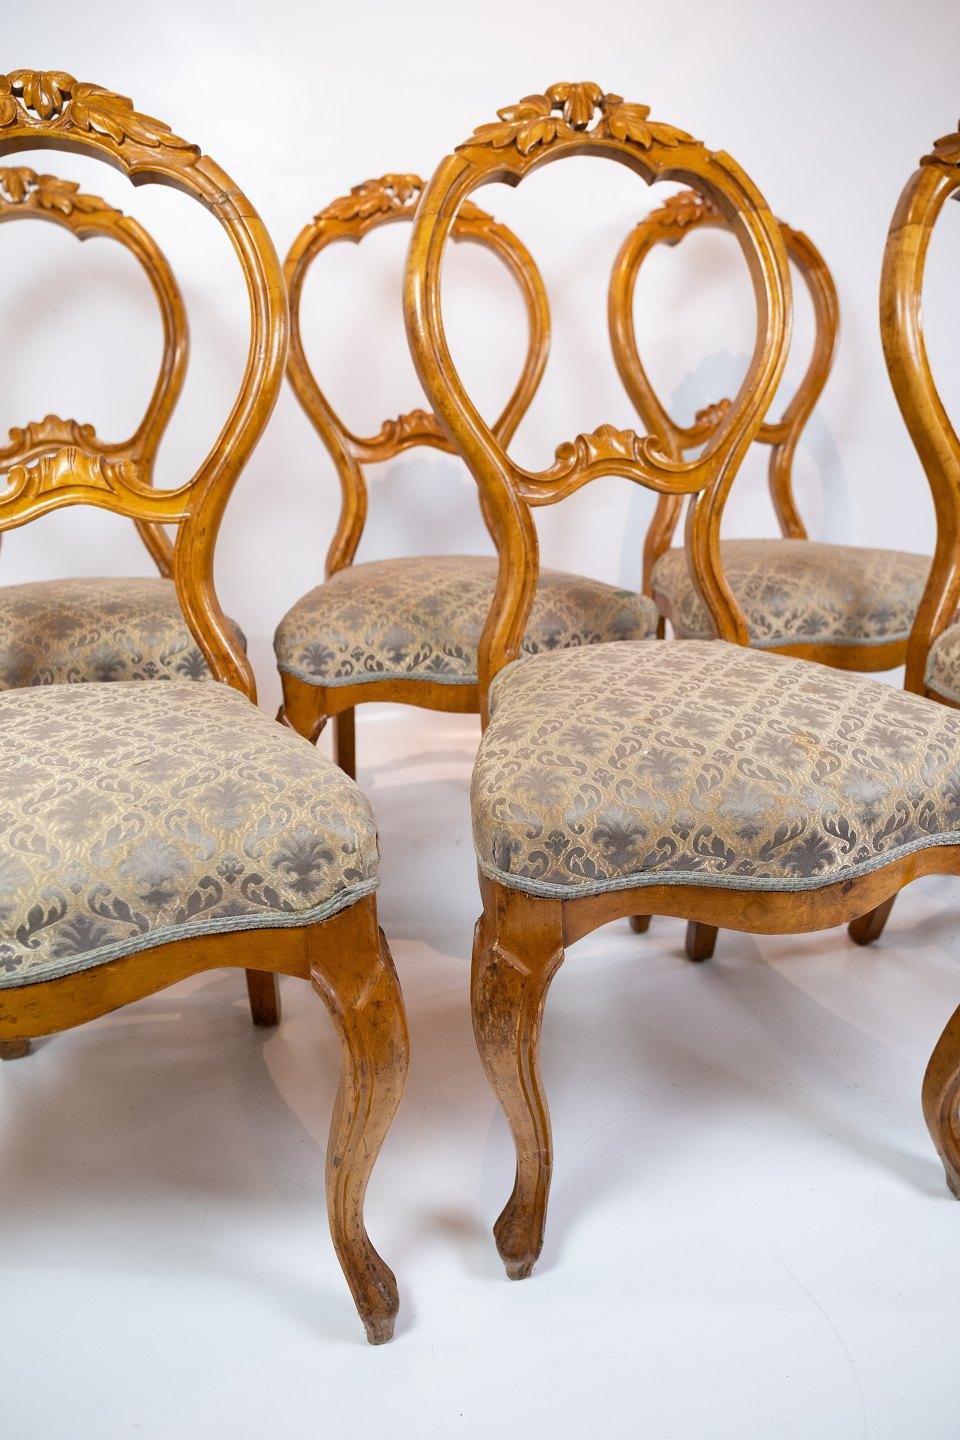 Das Set aus sechs Rokoko-Esszimmerstühlen aus hellem Mahagoni und mit aufwändig gemustertem Stoff verziert, erinnert an die Opulenz und Eleganz der 1760er Jahre. Diese Stühle sind exquisite Beispiele des Rokoko-Stils, der sich durch aufwändige